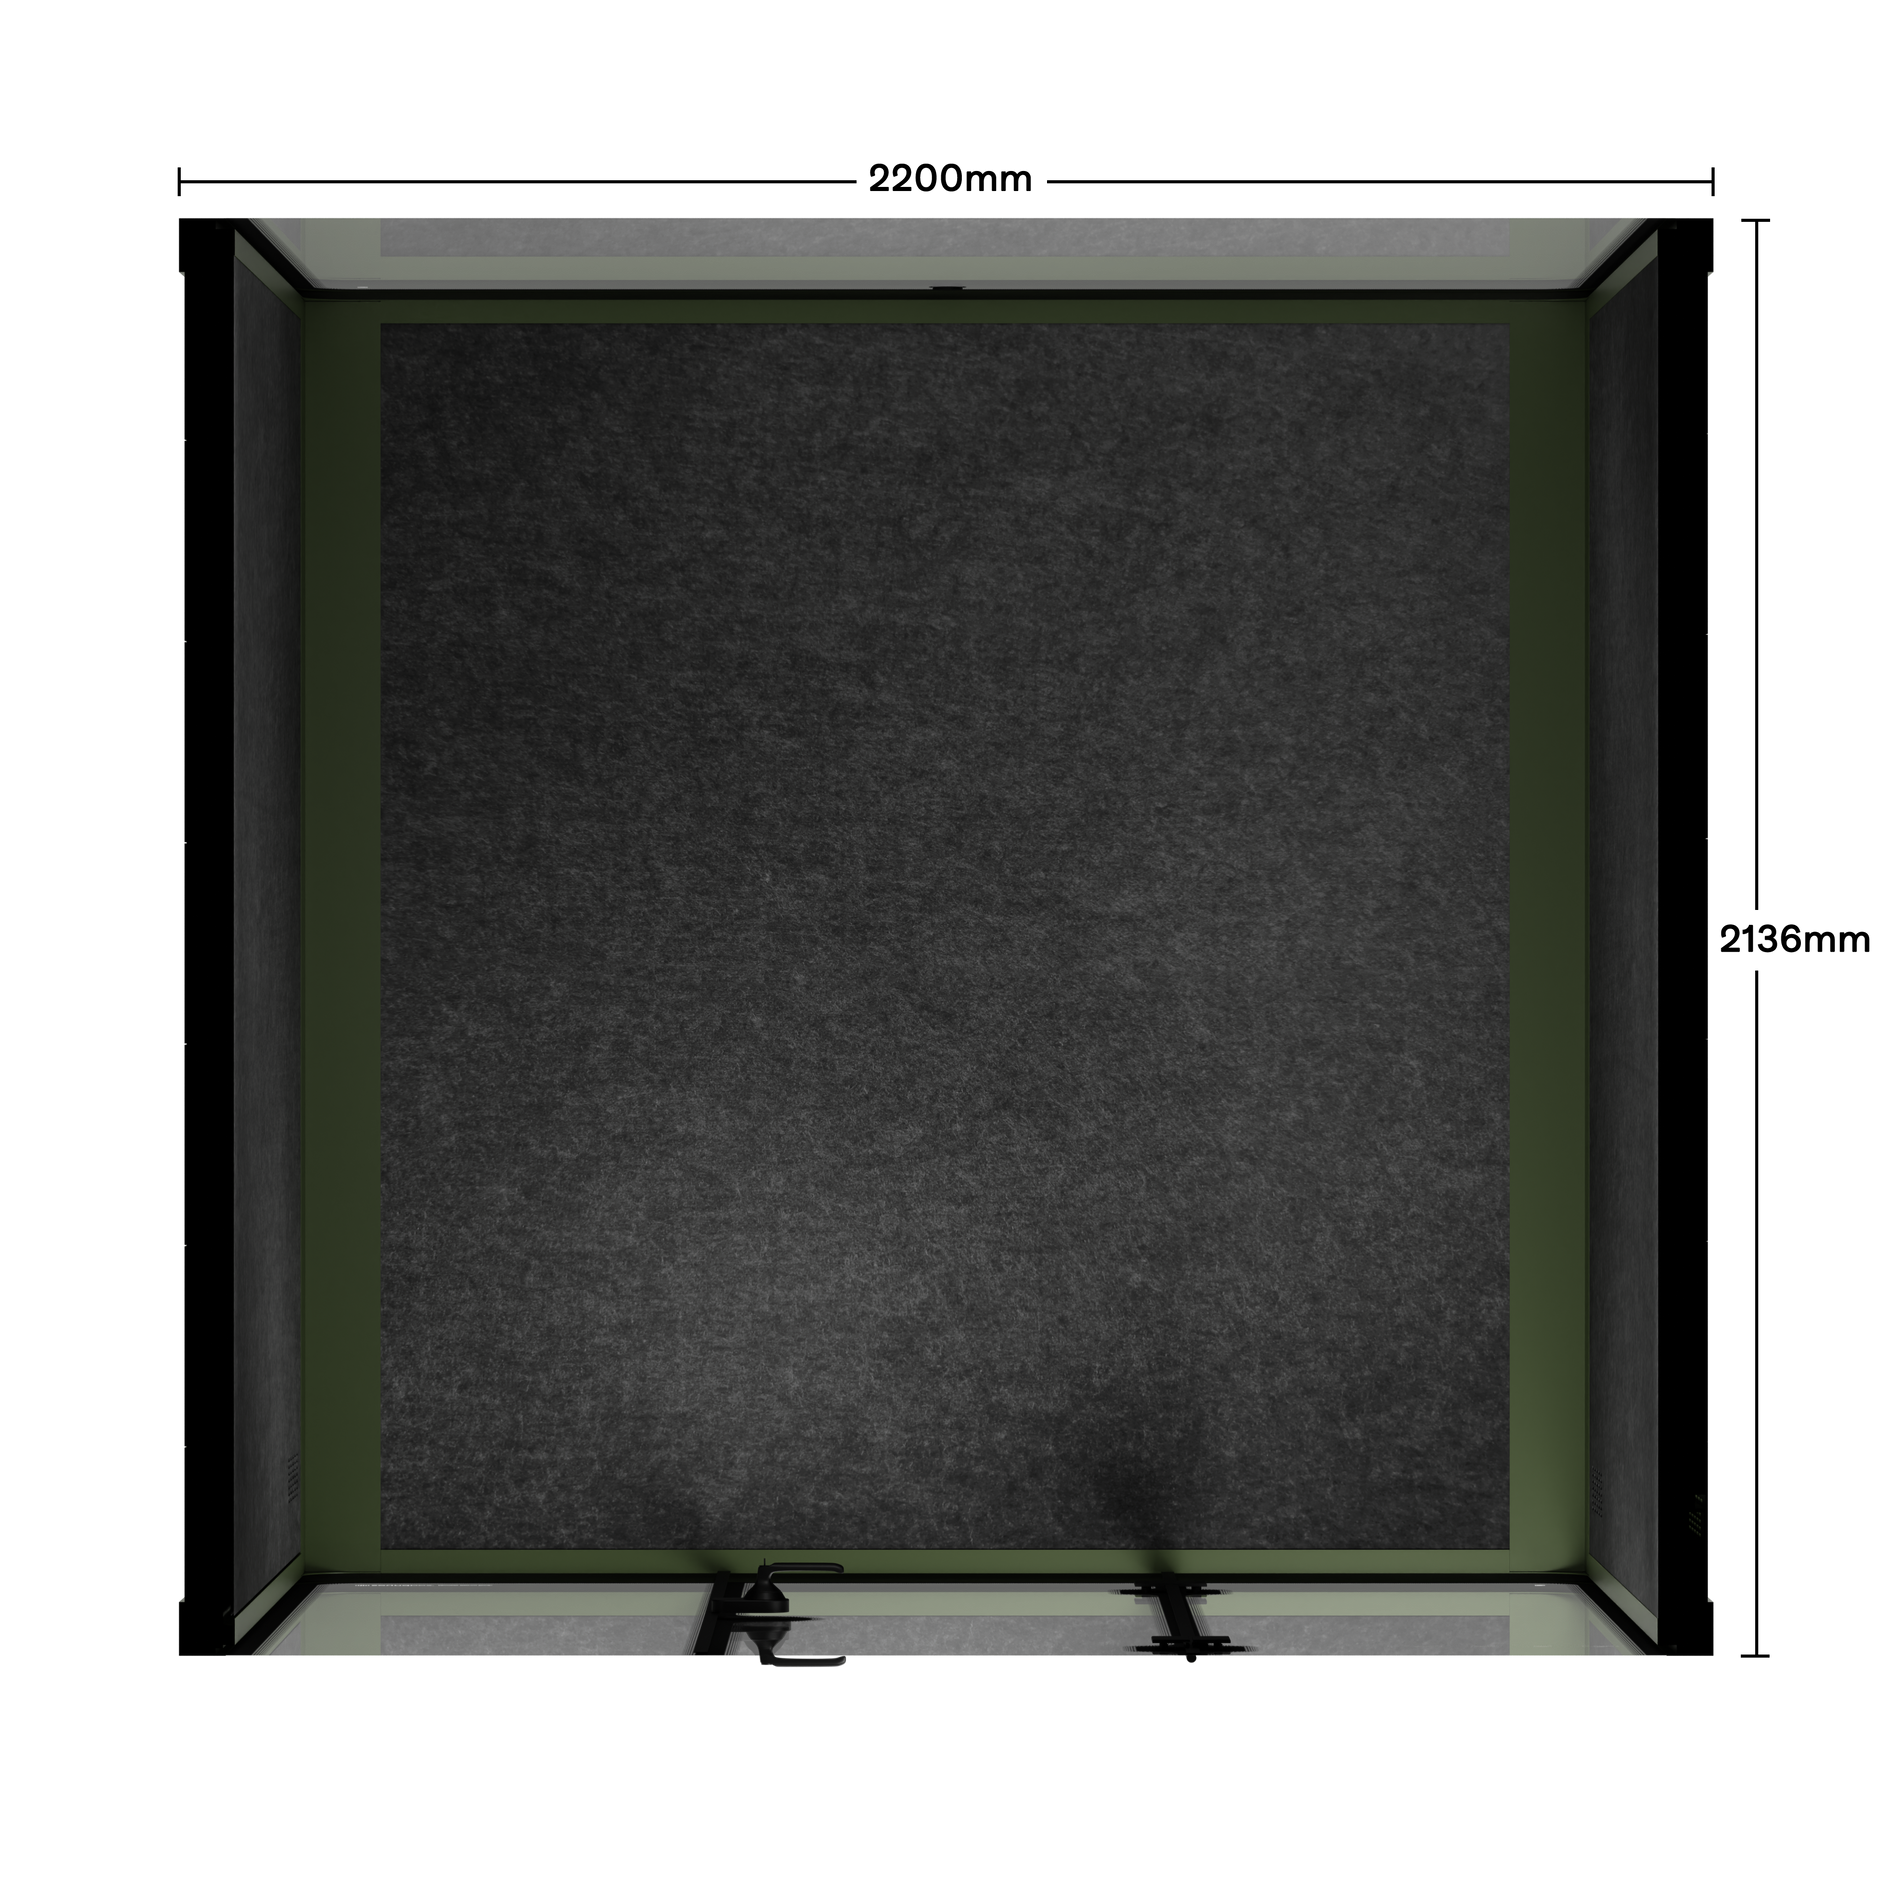 Quell - Besprechungskabine - 6 PersonenDark Green / Dark Grey / No Furniture